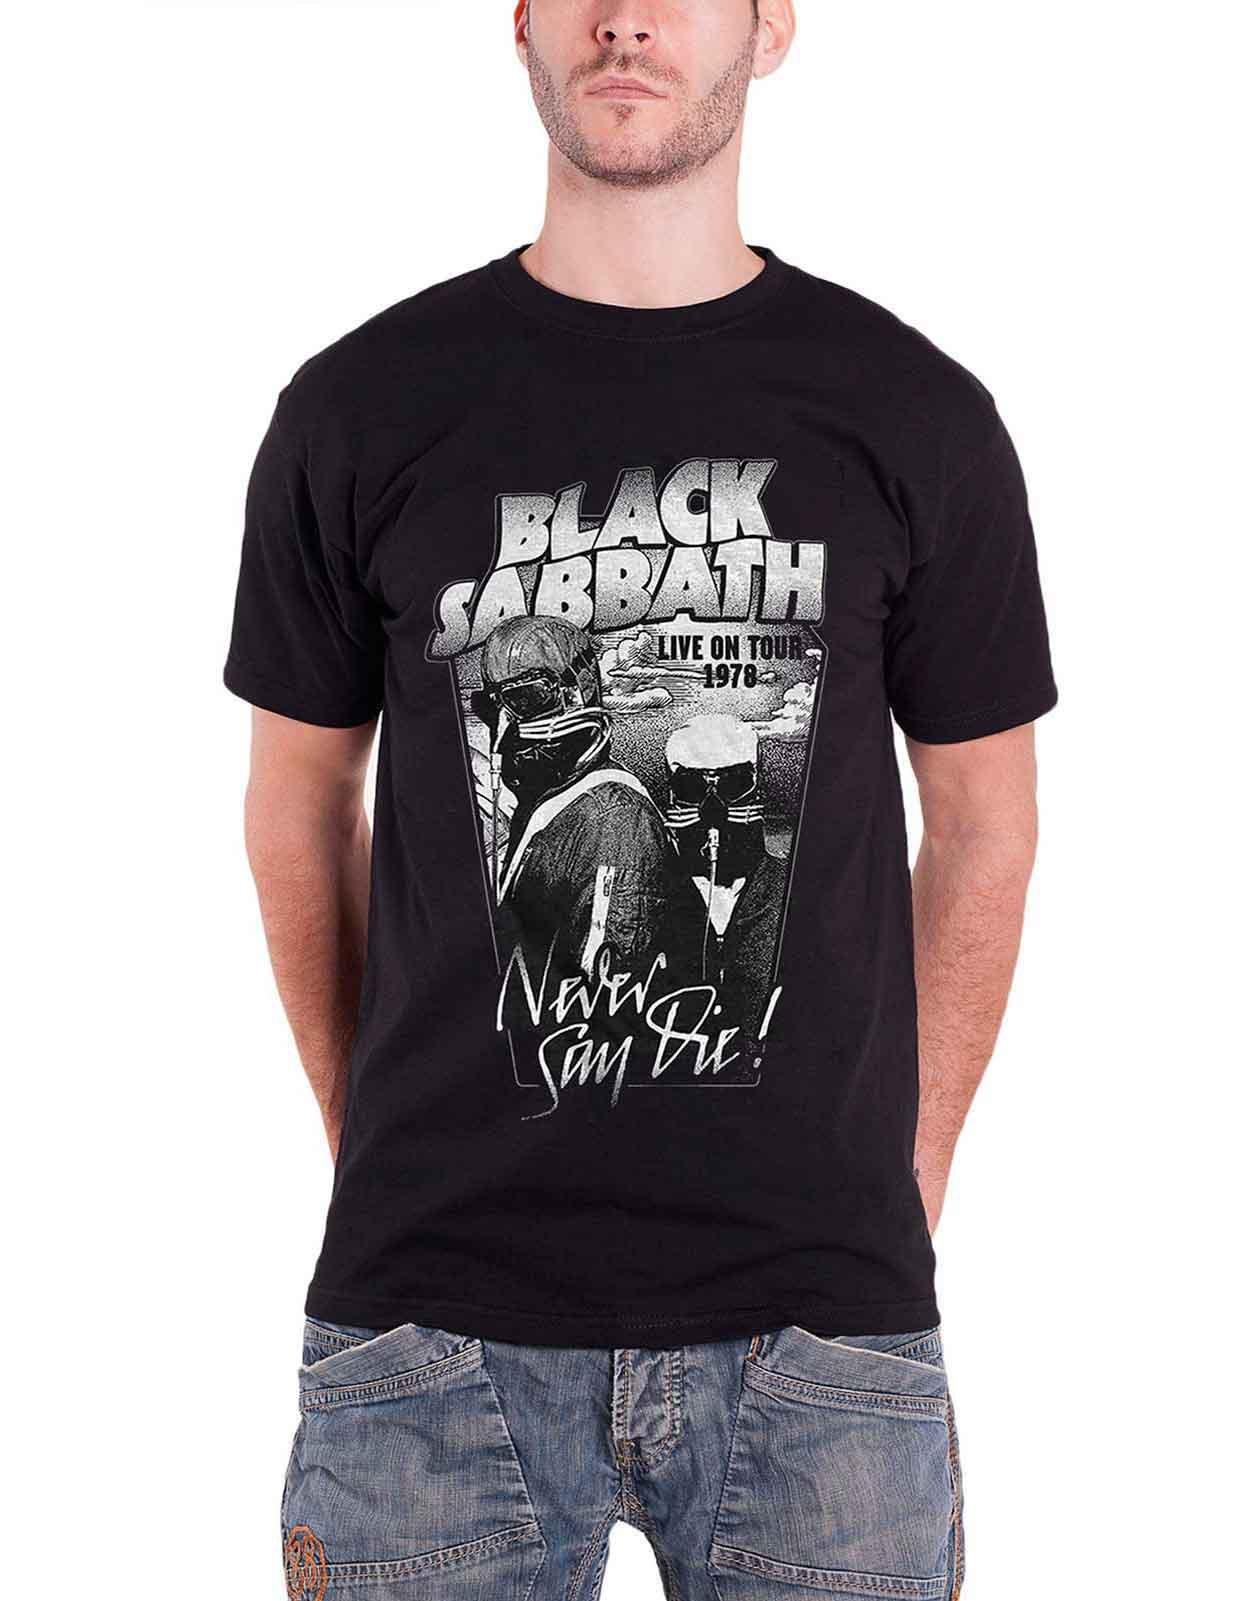 Черная футболка Never Say Die Live on Tour 1978 Black Sabbath, черный black sabbath black sabbath never say die